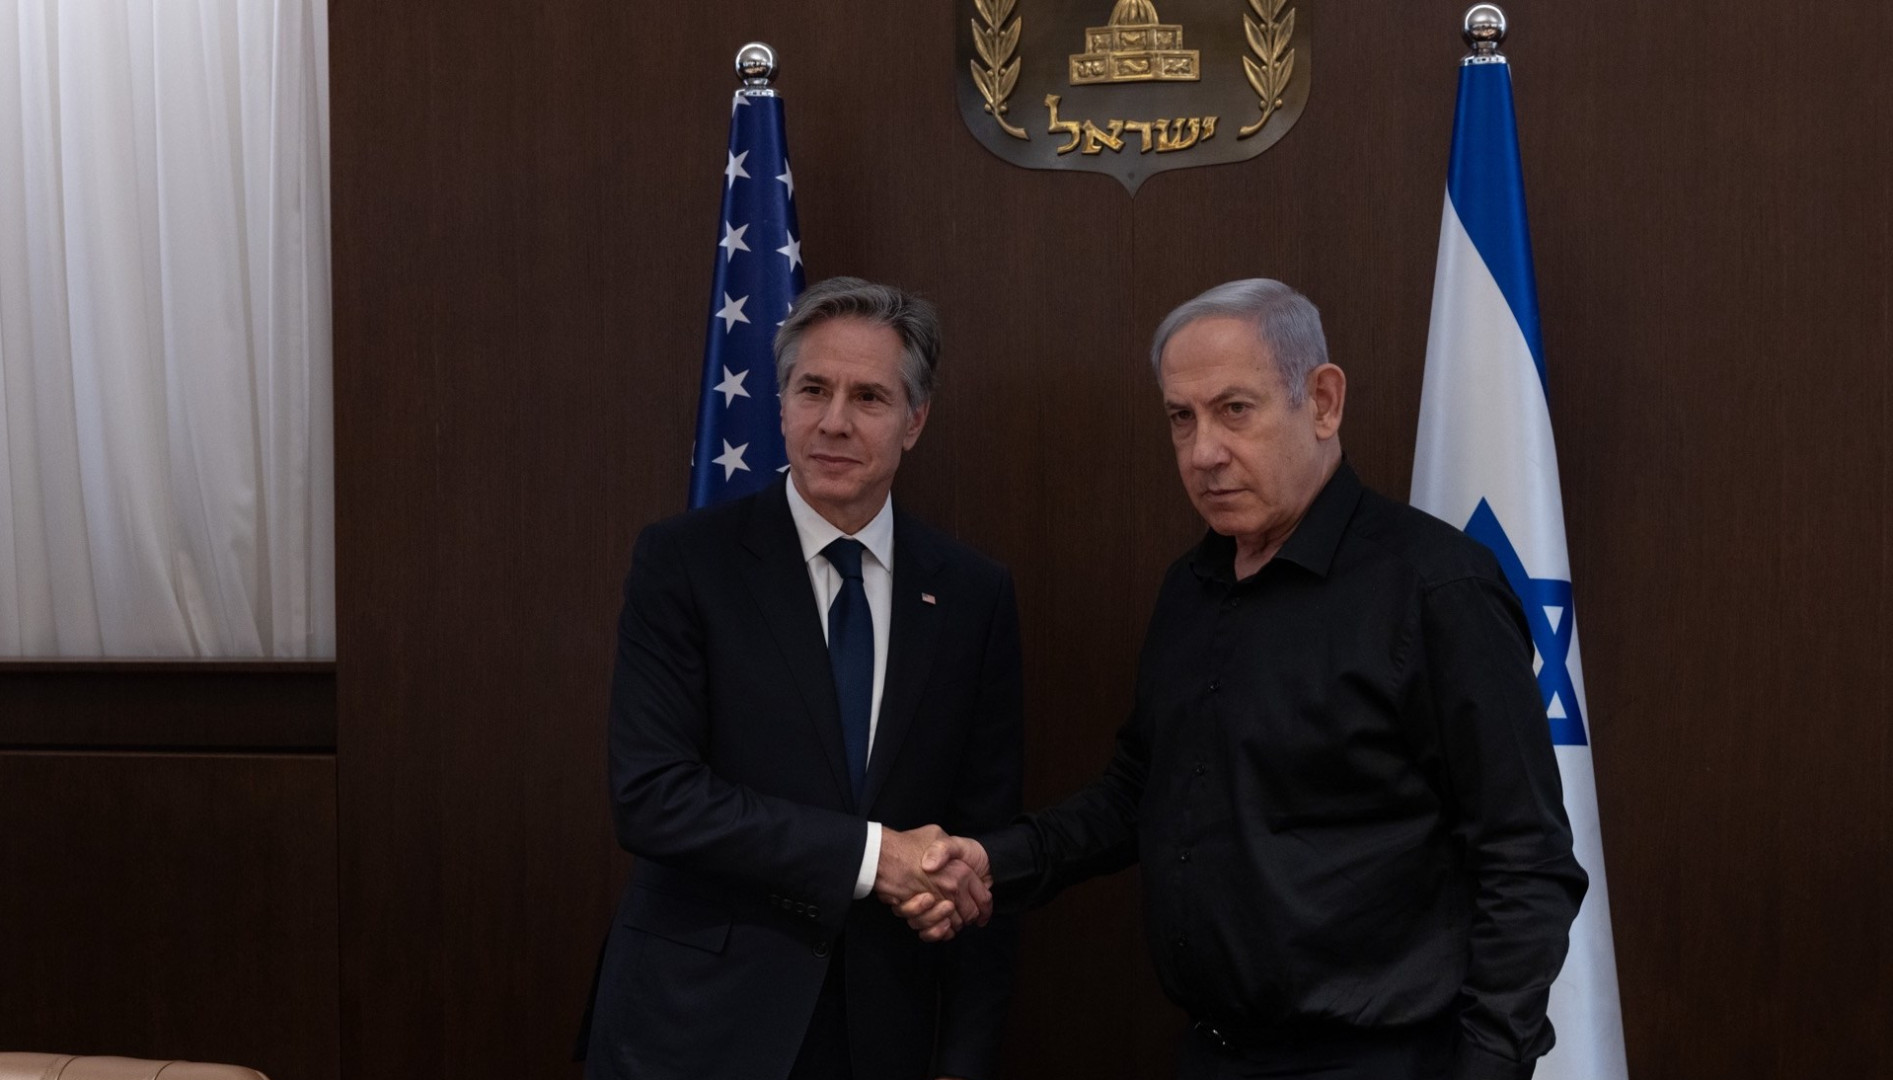 Blinken arrives in Israel for talks